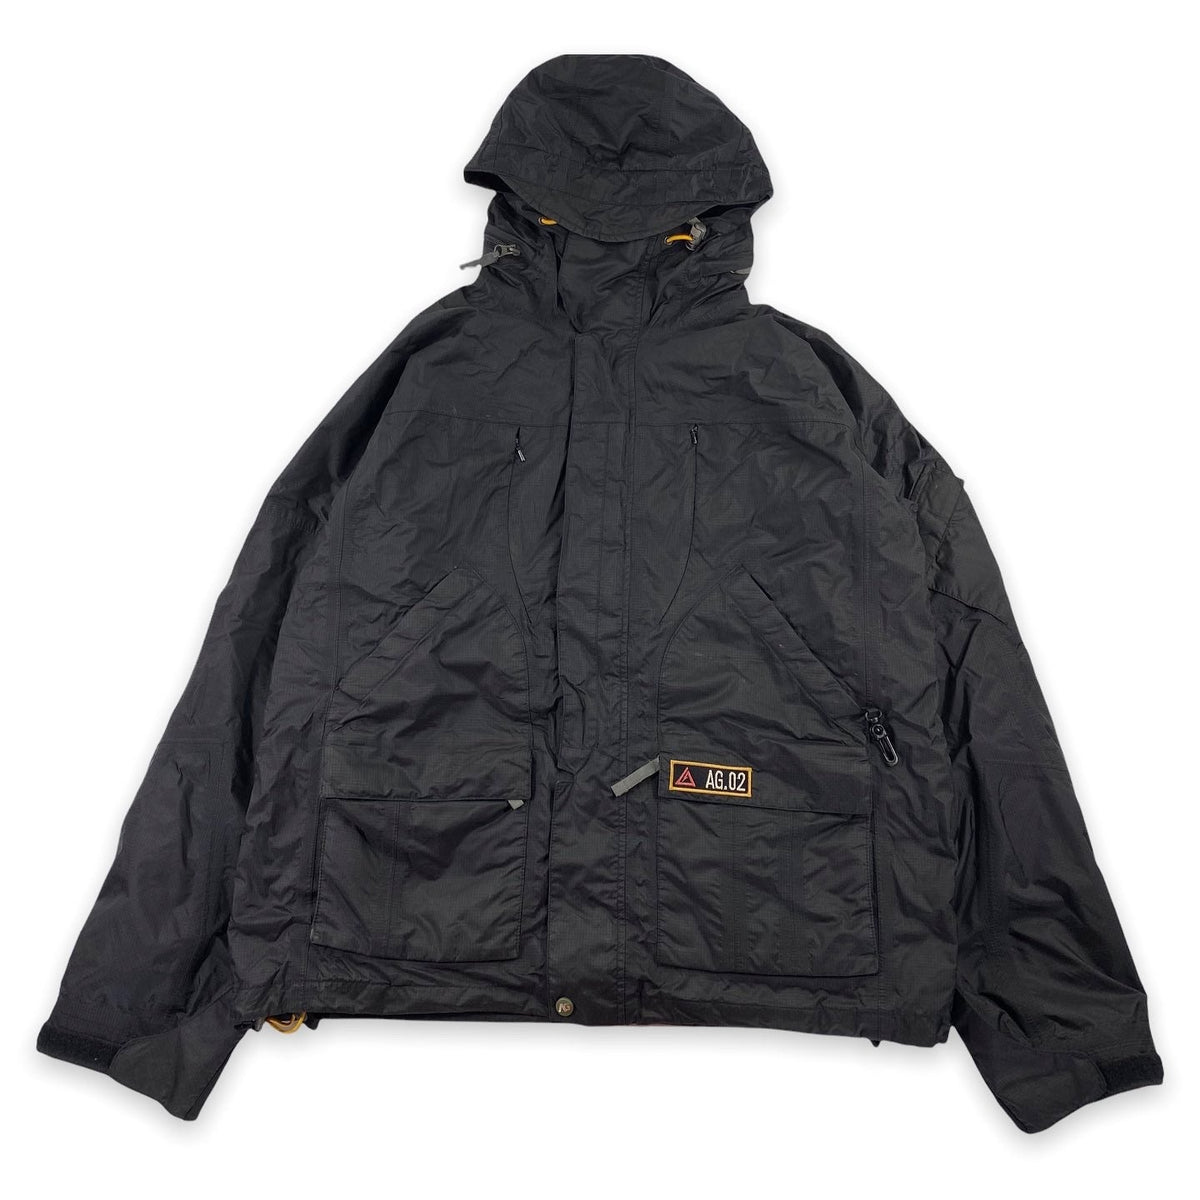 Burton Analog Xenon jacket Sz large – Vintage Sponsor